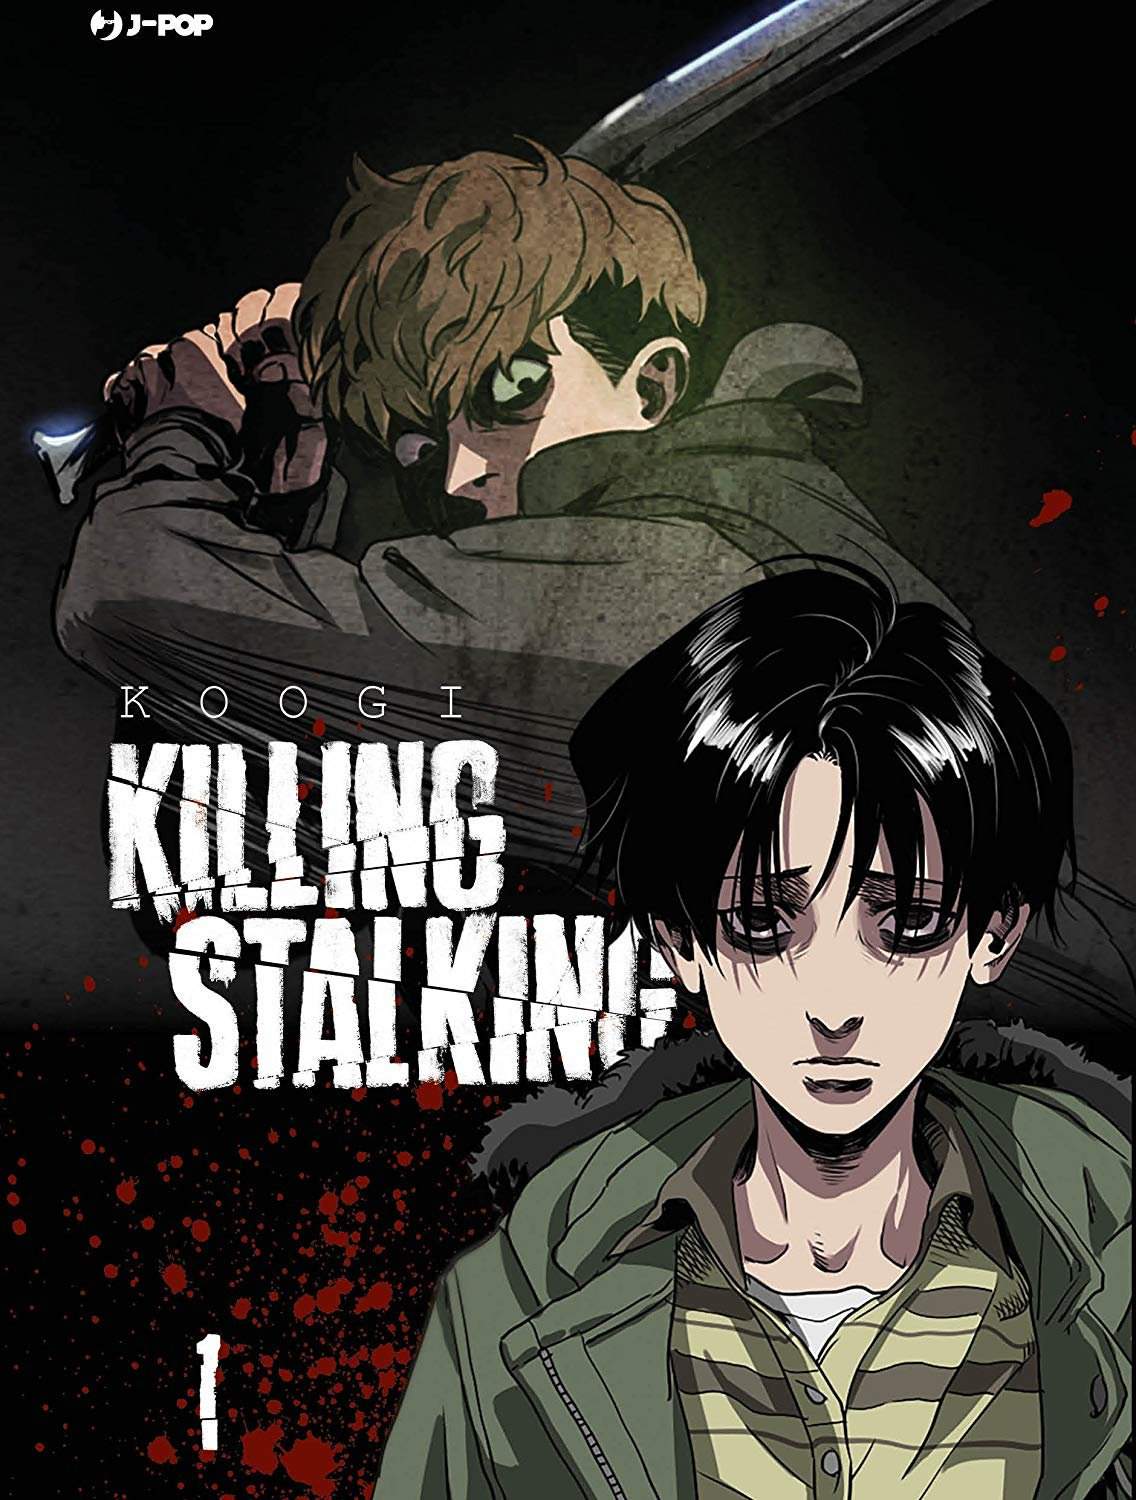 Killing stalking - Capítulo 00-Prólogo PT-BR Yaoi - Yaoi